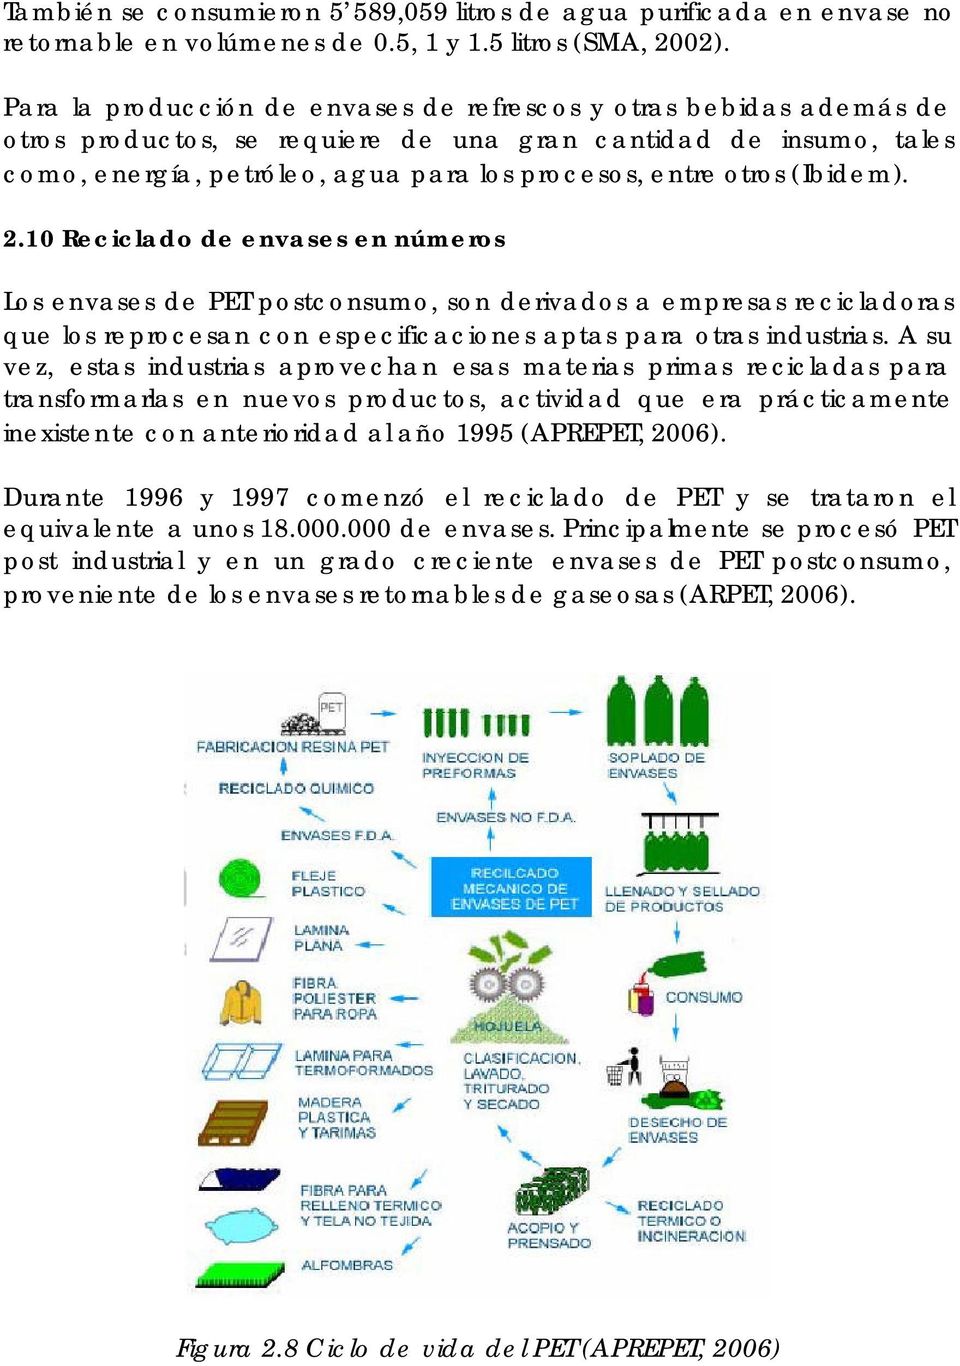 (Ibidem). 2.10 Reciclado de envases en números Los envases de PET postconsumo, son derivados a empresas recicladoras que los reprocesan con especificaciones aptas para otras industrias.